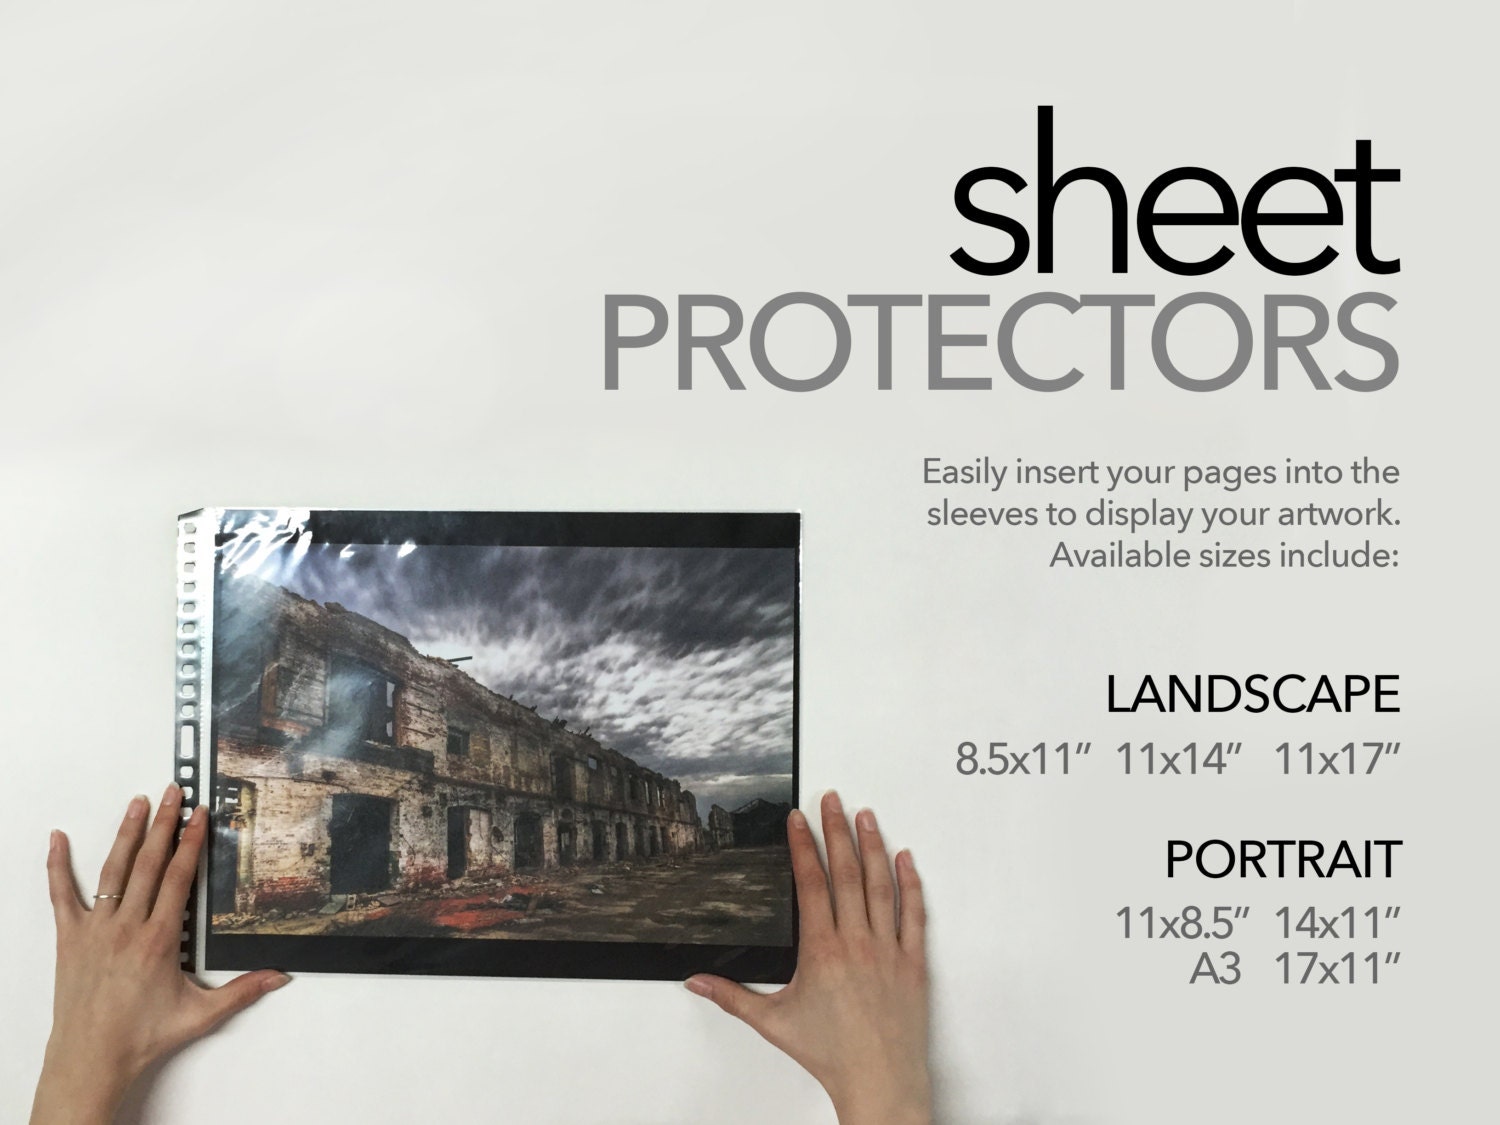  8.5x11 Sheet Protectors